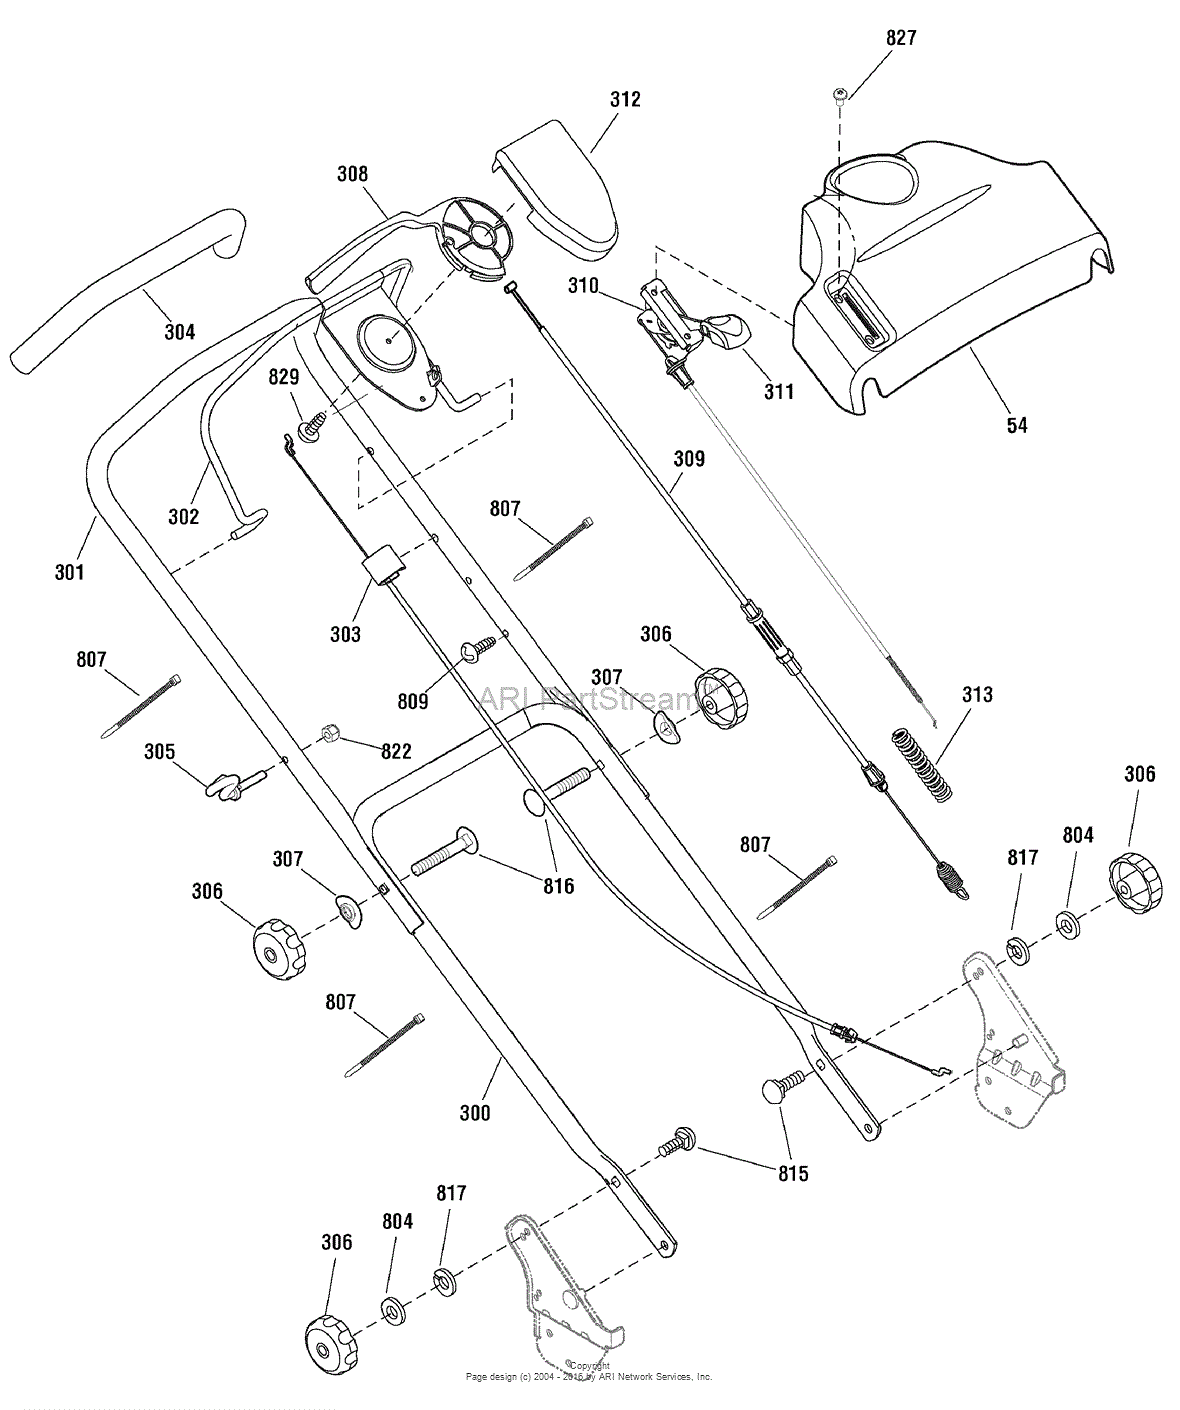 Snapper Erds19700 881036 19 Euro Self Propelled Mower Parts Diagram